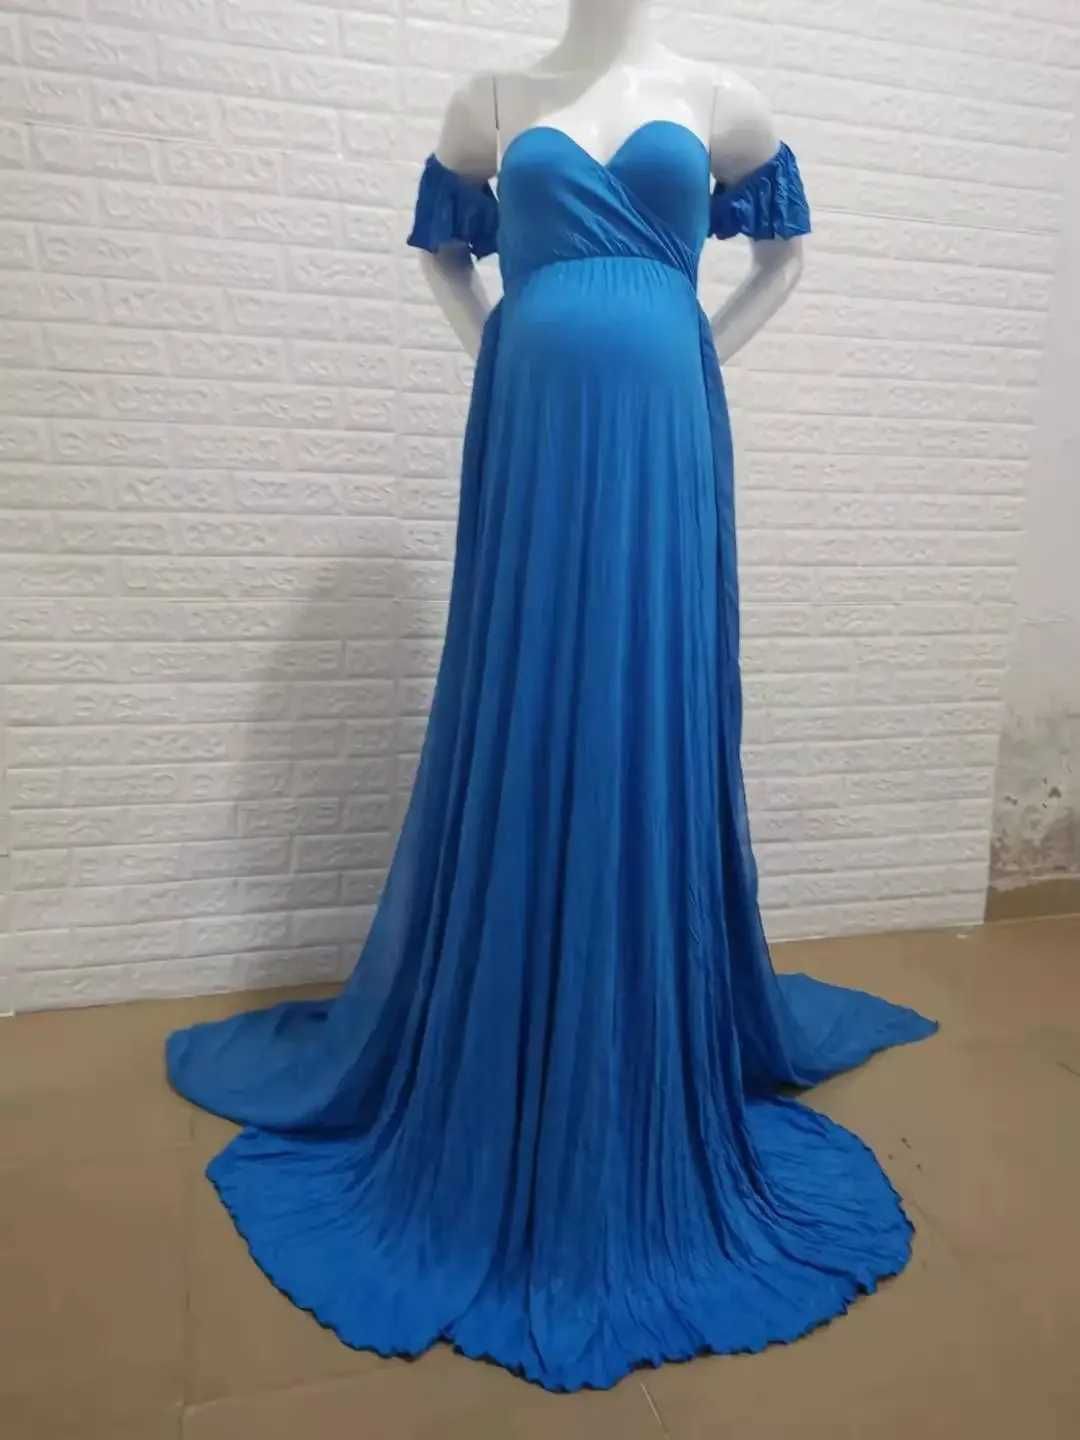 1x Blue Dress